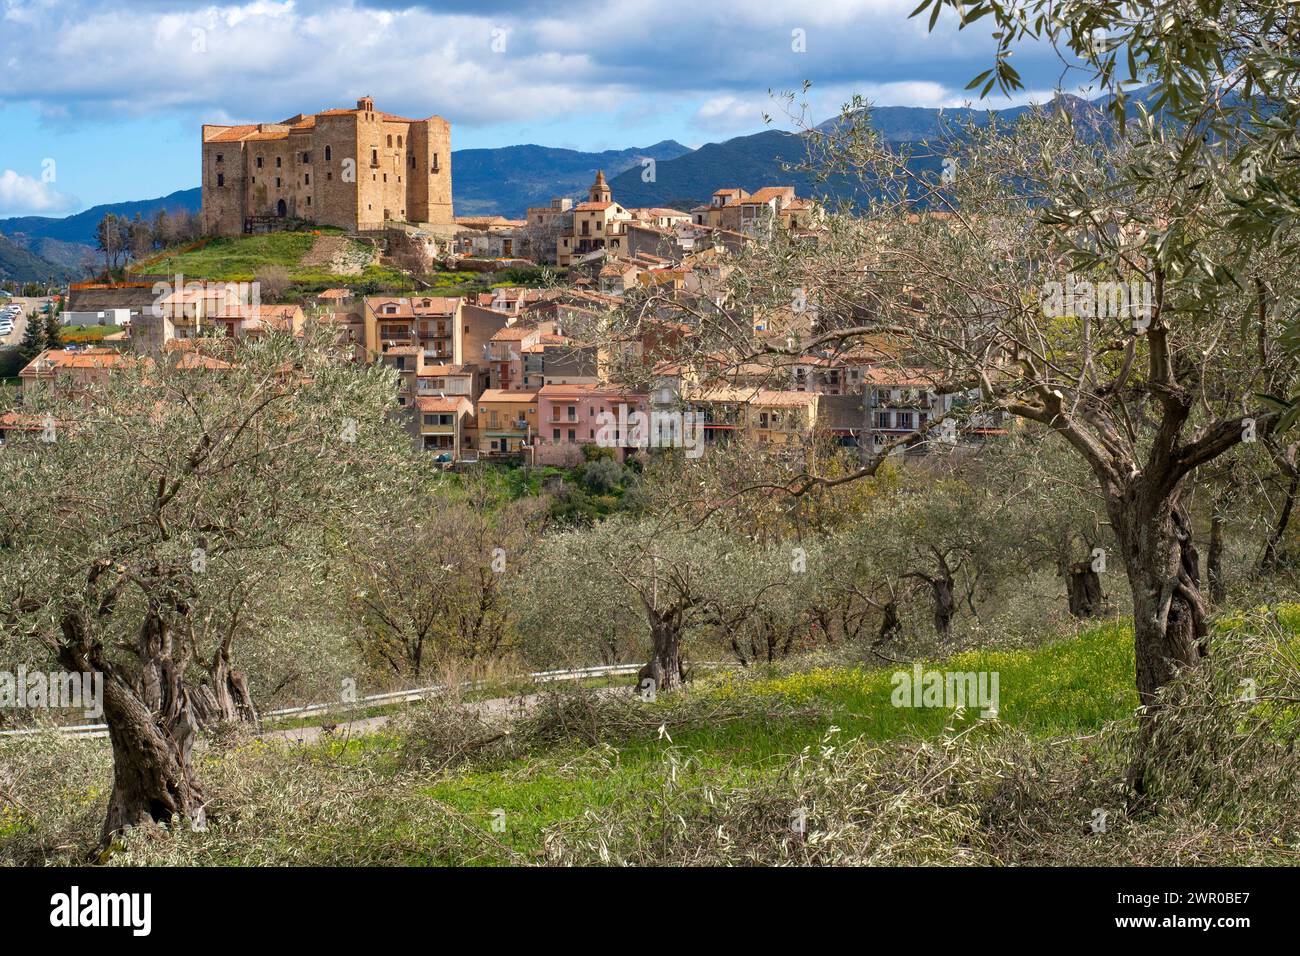 Famoso castello e città di Castelbuono sull'isola italiana della Sicilia Foto Stock